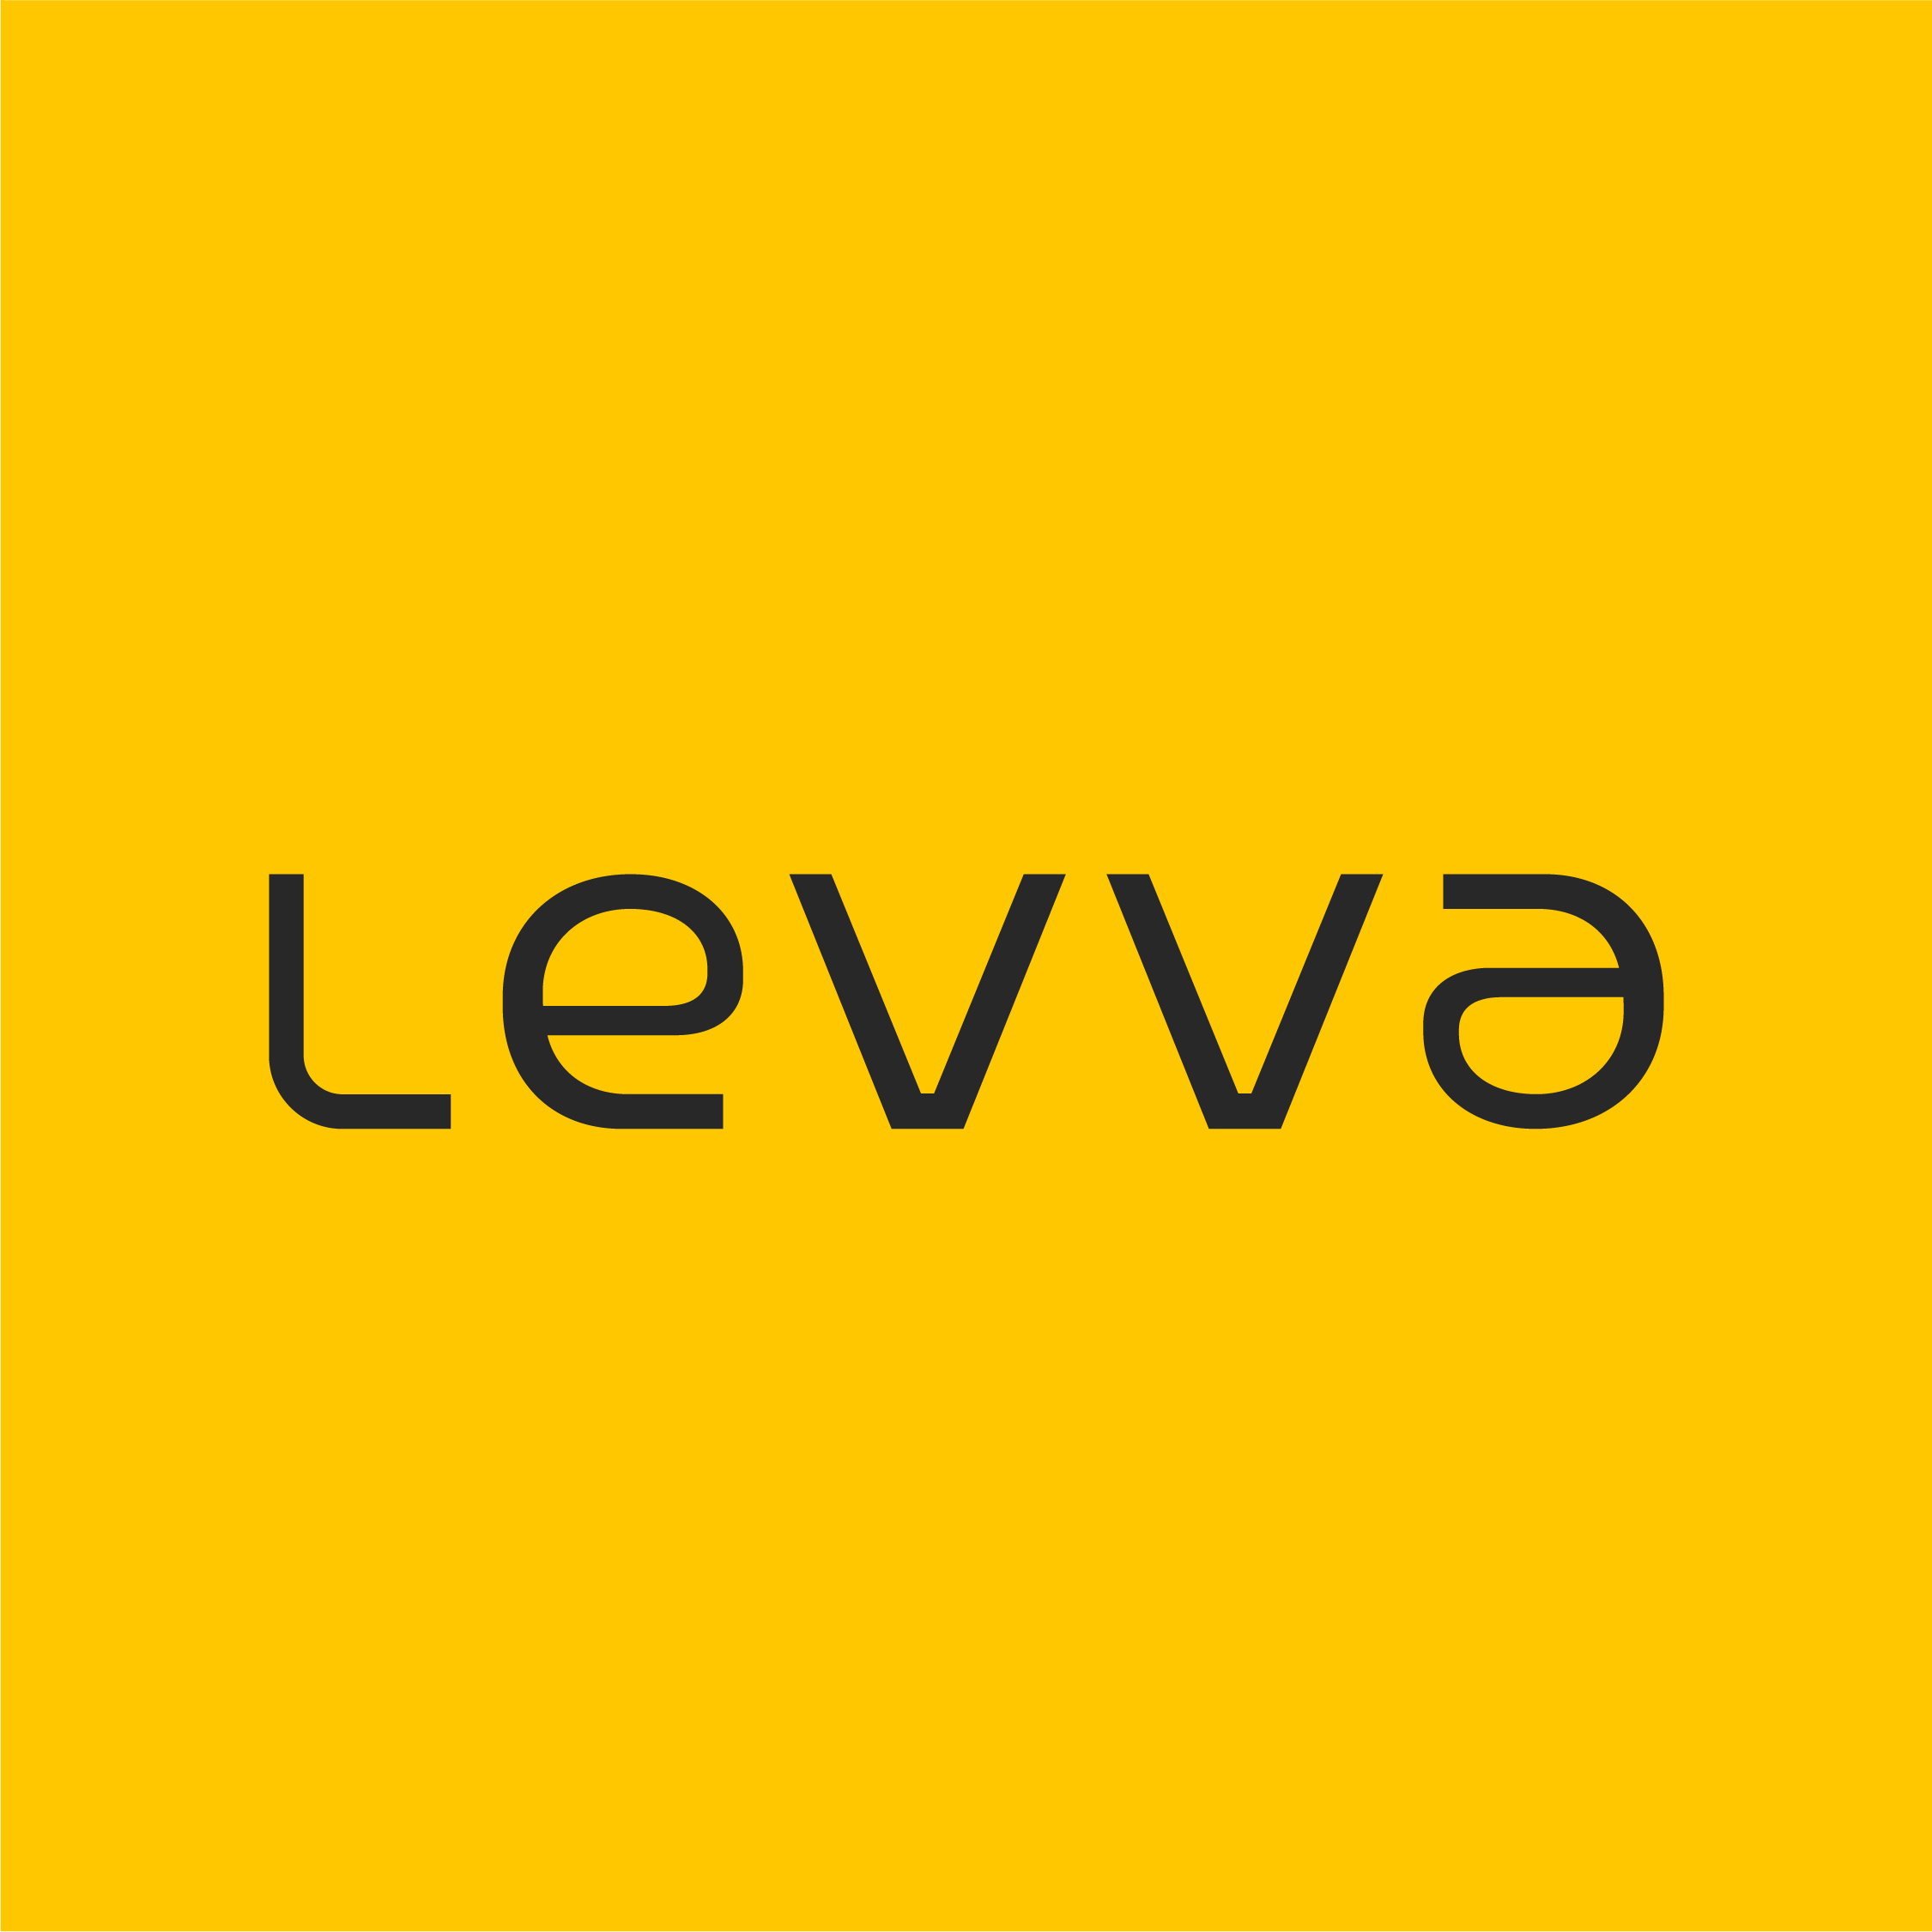 levva_levva-fundo-amarelo